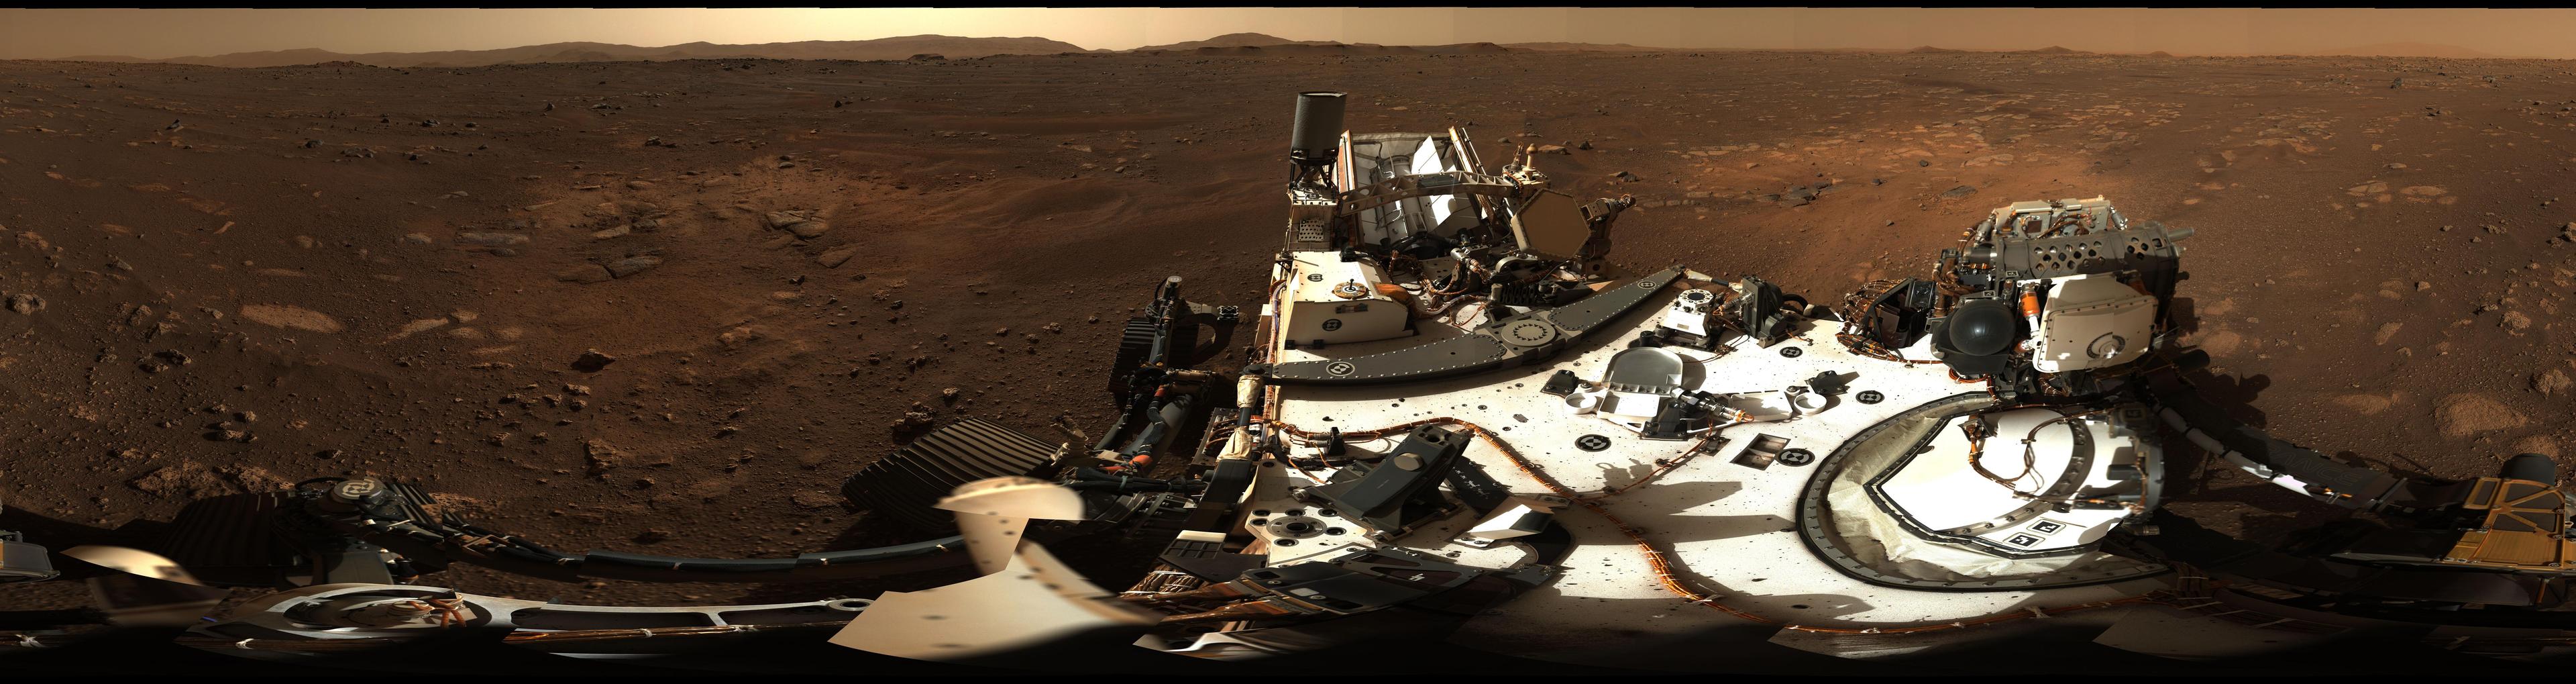 صورة پانورامية تغطّي 360 درجة من قعر فوّهة جيزيرو على سطح المريخ، يظهر في مقدّمتها سطح عربة المُثابرة (پِرسيڤيرَنس) ومن حولها بقعٌ ترابية بلون أفتح من غيرها، وترتفع حافة الفوّهة في البعيد.